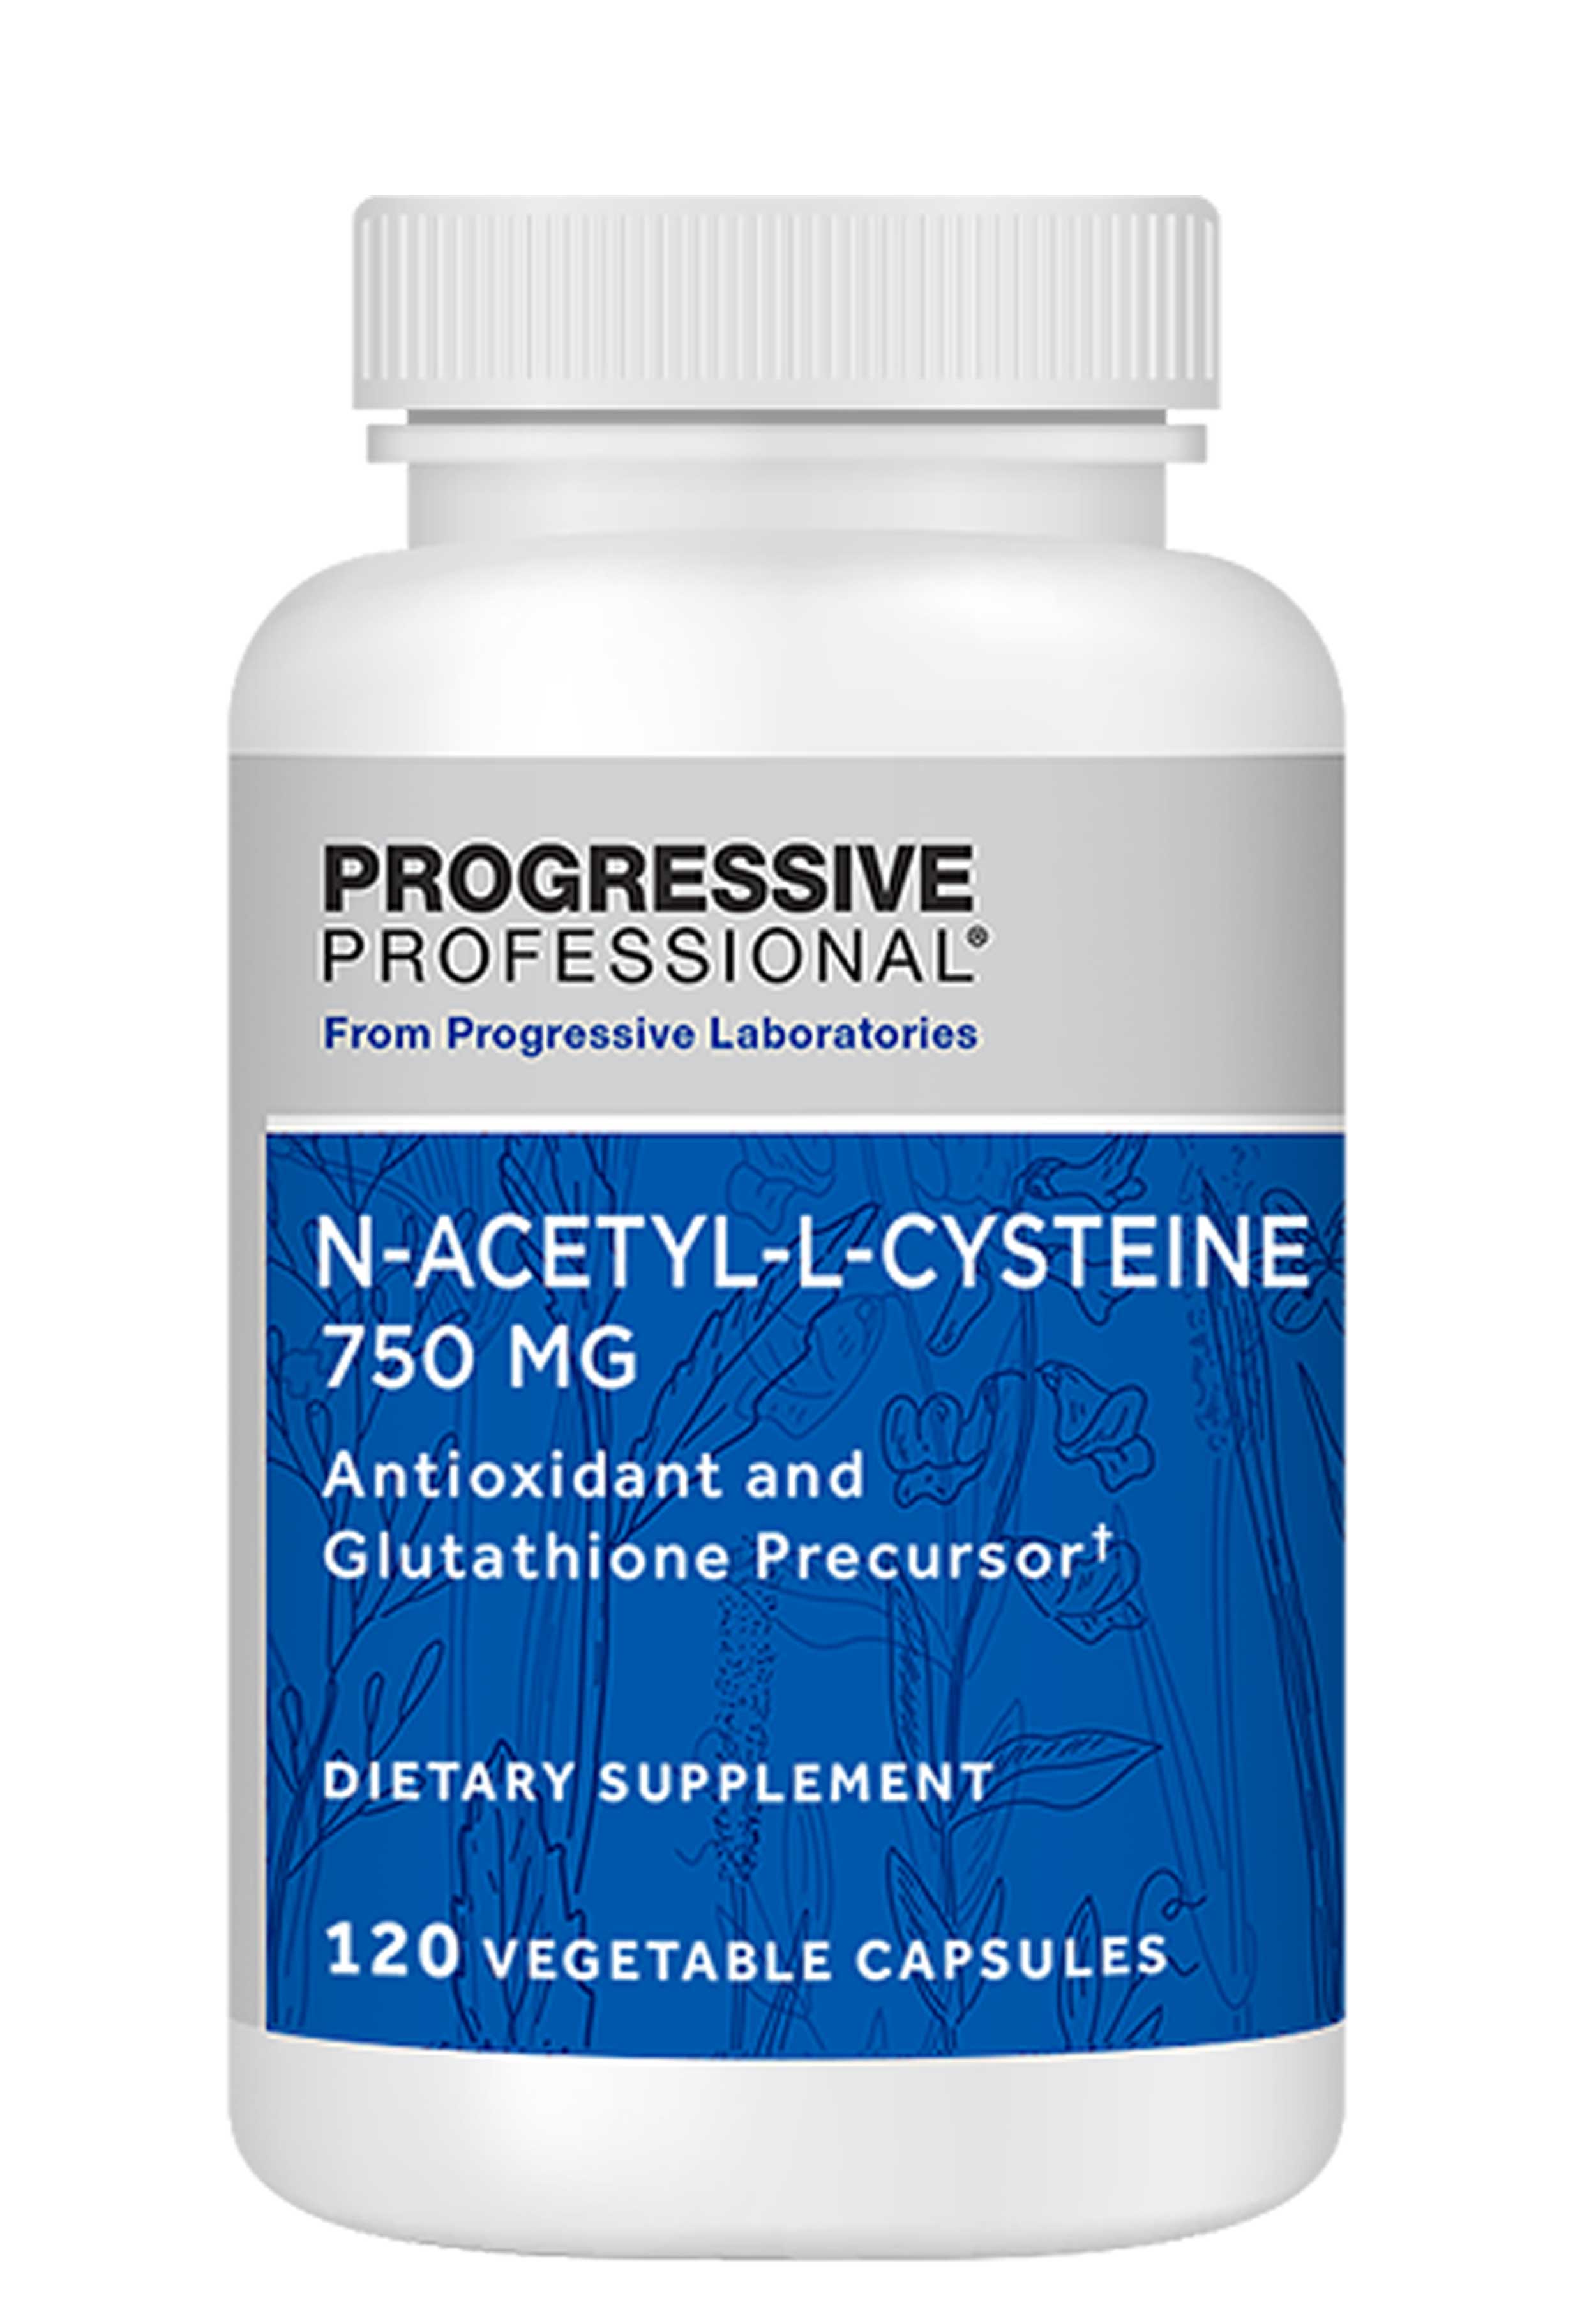 Progressive Laboratories N-Acetyl-L-Cysteine